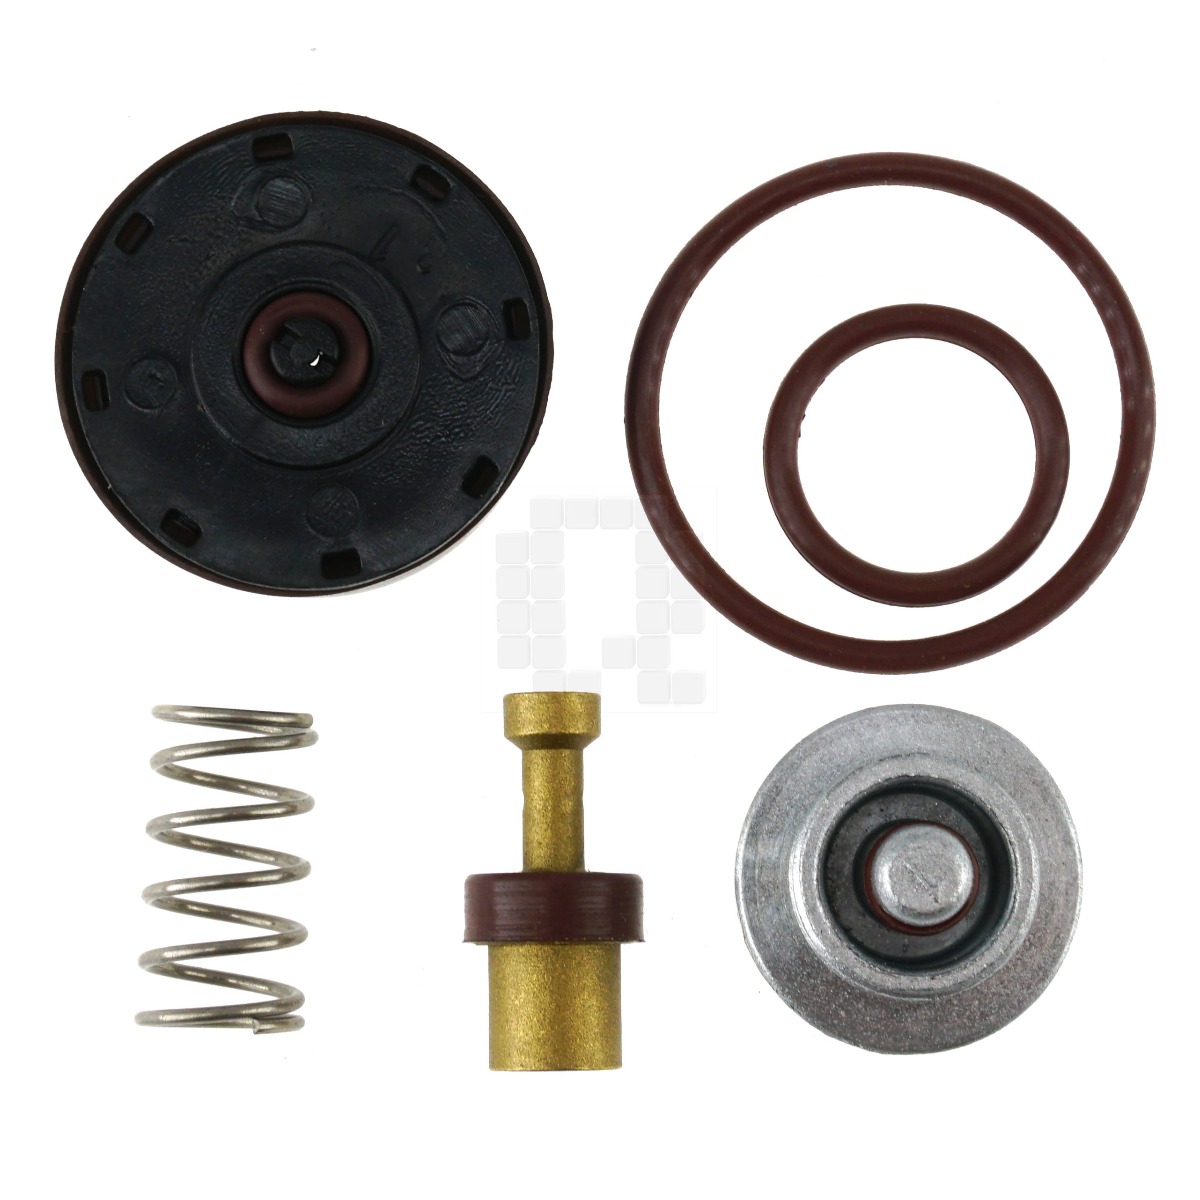 DeWALT/Porter Cable/ Craftsman/DeVilbiss N008792 Air Compressor Regulator Repair Kit